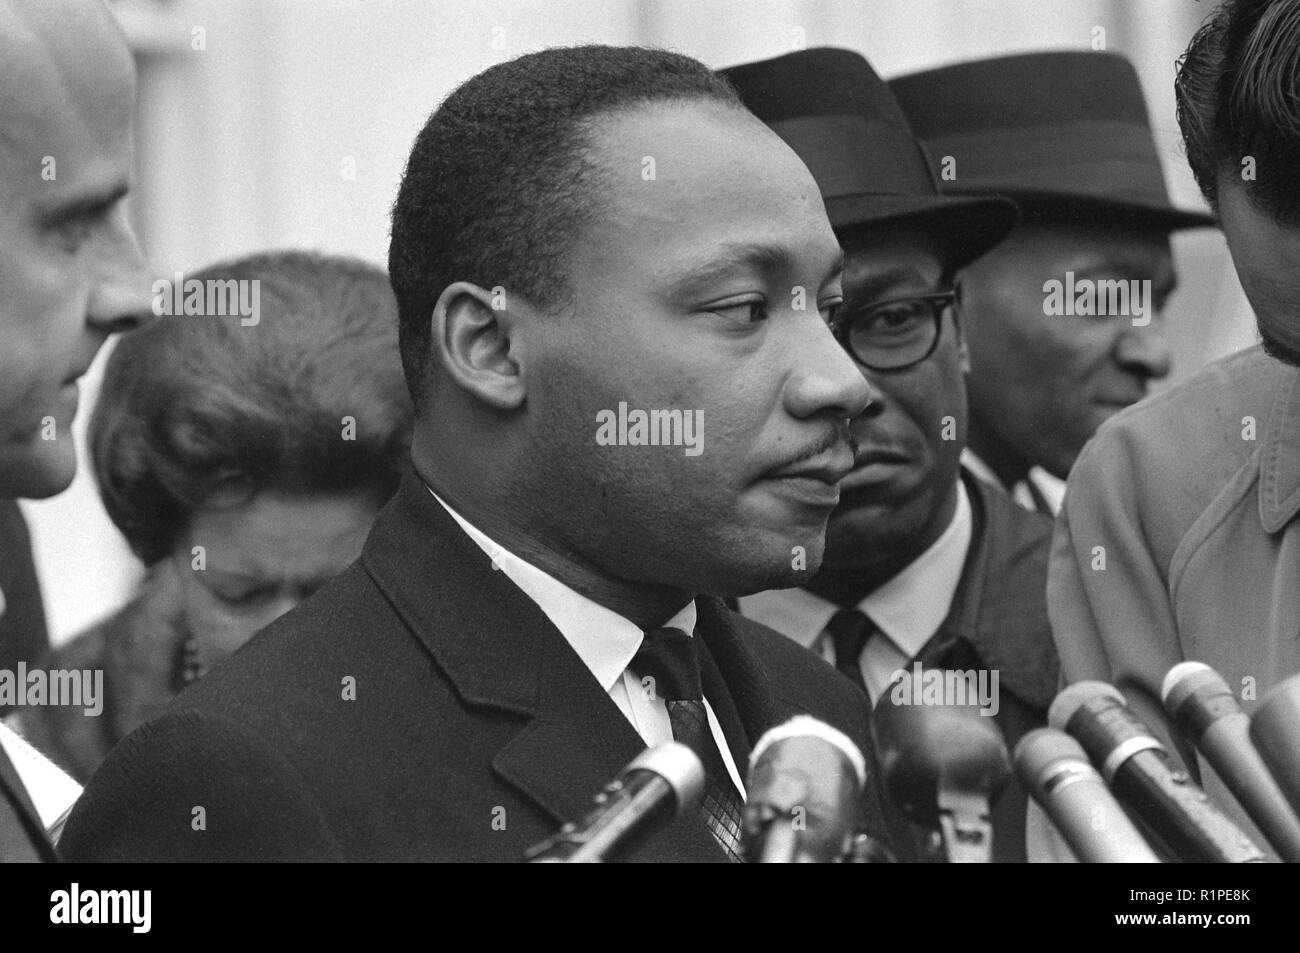 Martin Luther King, Jr., tête-et-épaules portrait, faisant face à droite, à micros, après une rencontre avec le président Johnson pour discuter des droits civils, à la Maison Blanche, 1963 Banque D'Images